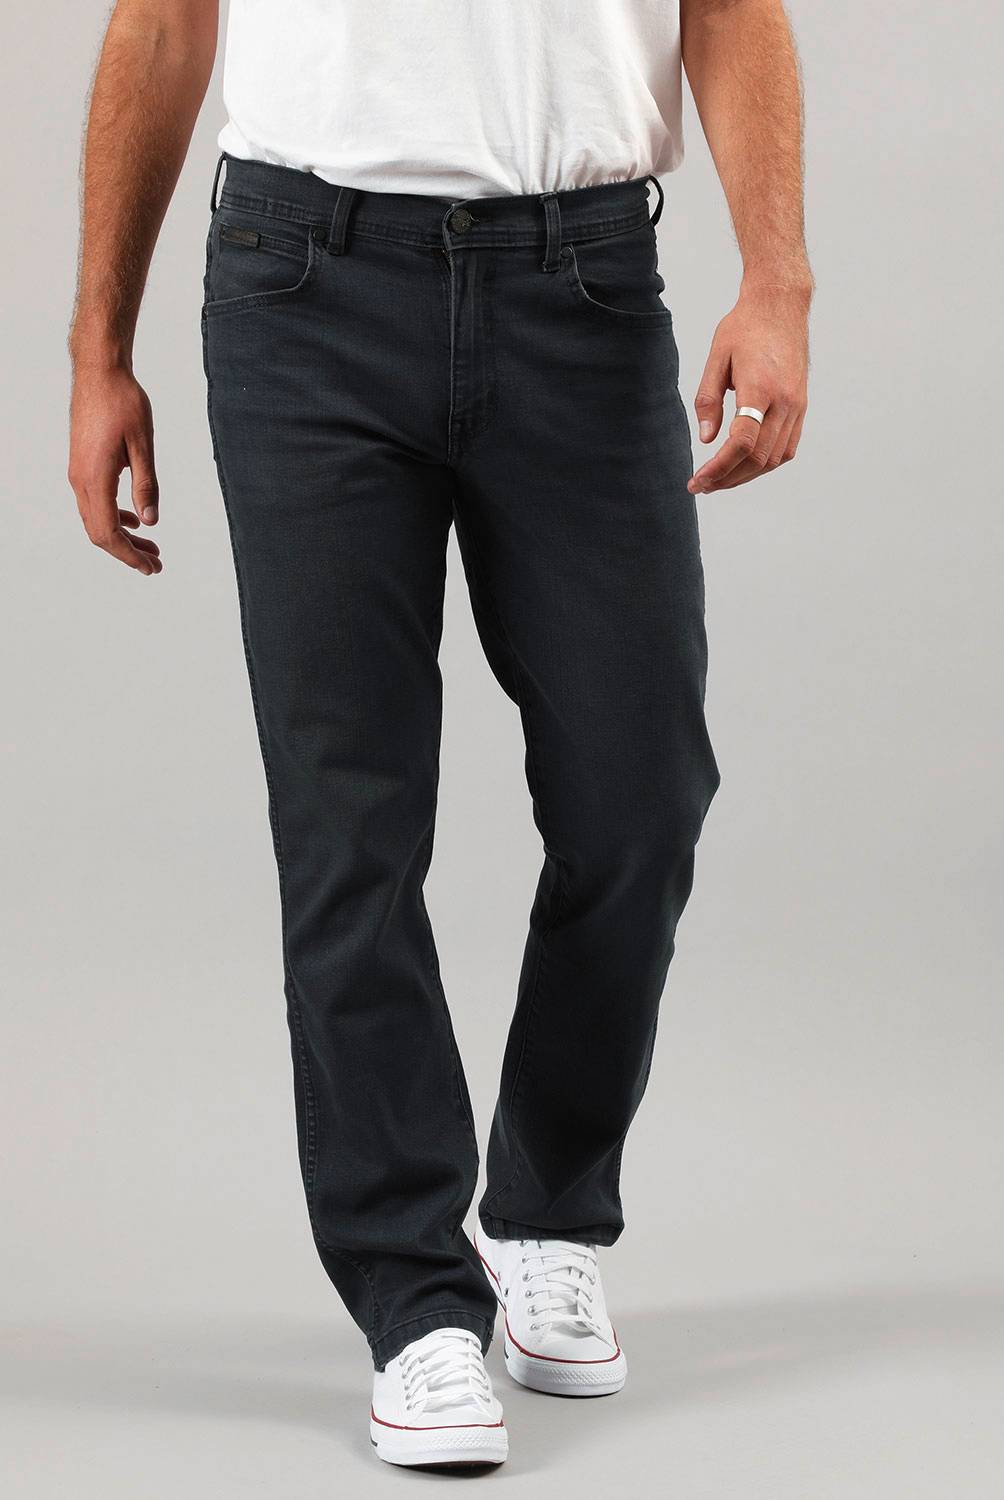 WRANGLER - Wrangler Jeans Regular Fit Hombre